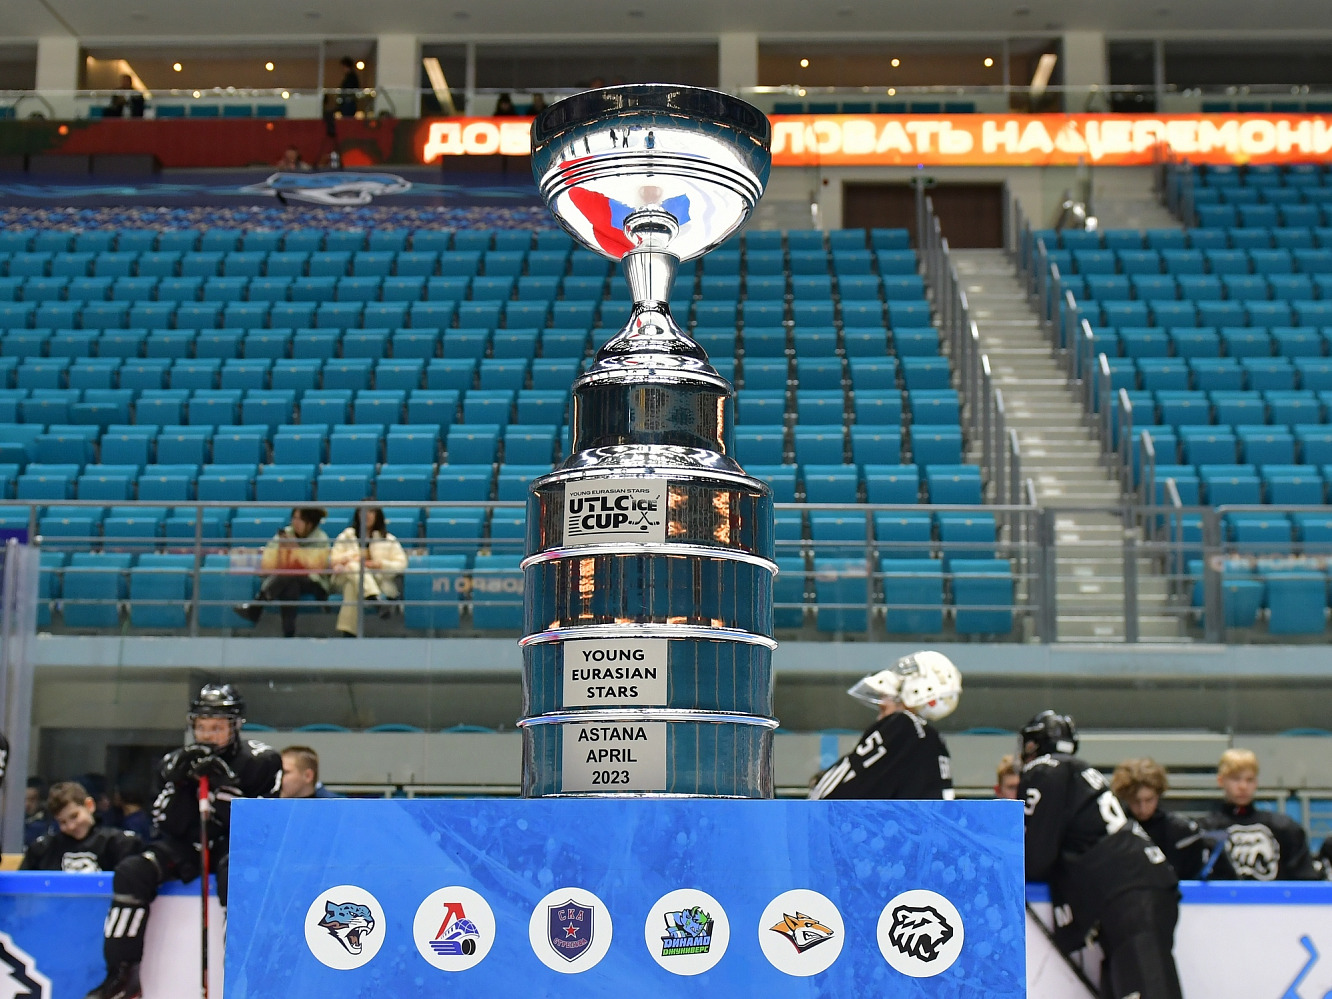 Астанада UTLC ICE CUP LV халықаралық хоккей турнирі өтеді